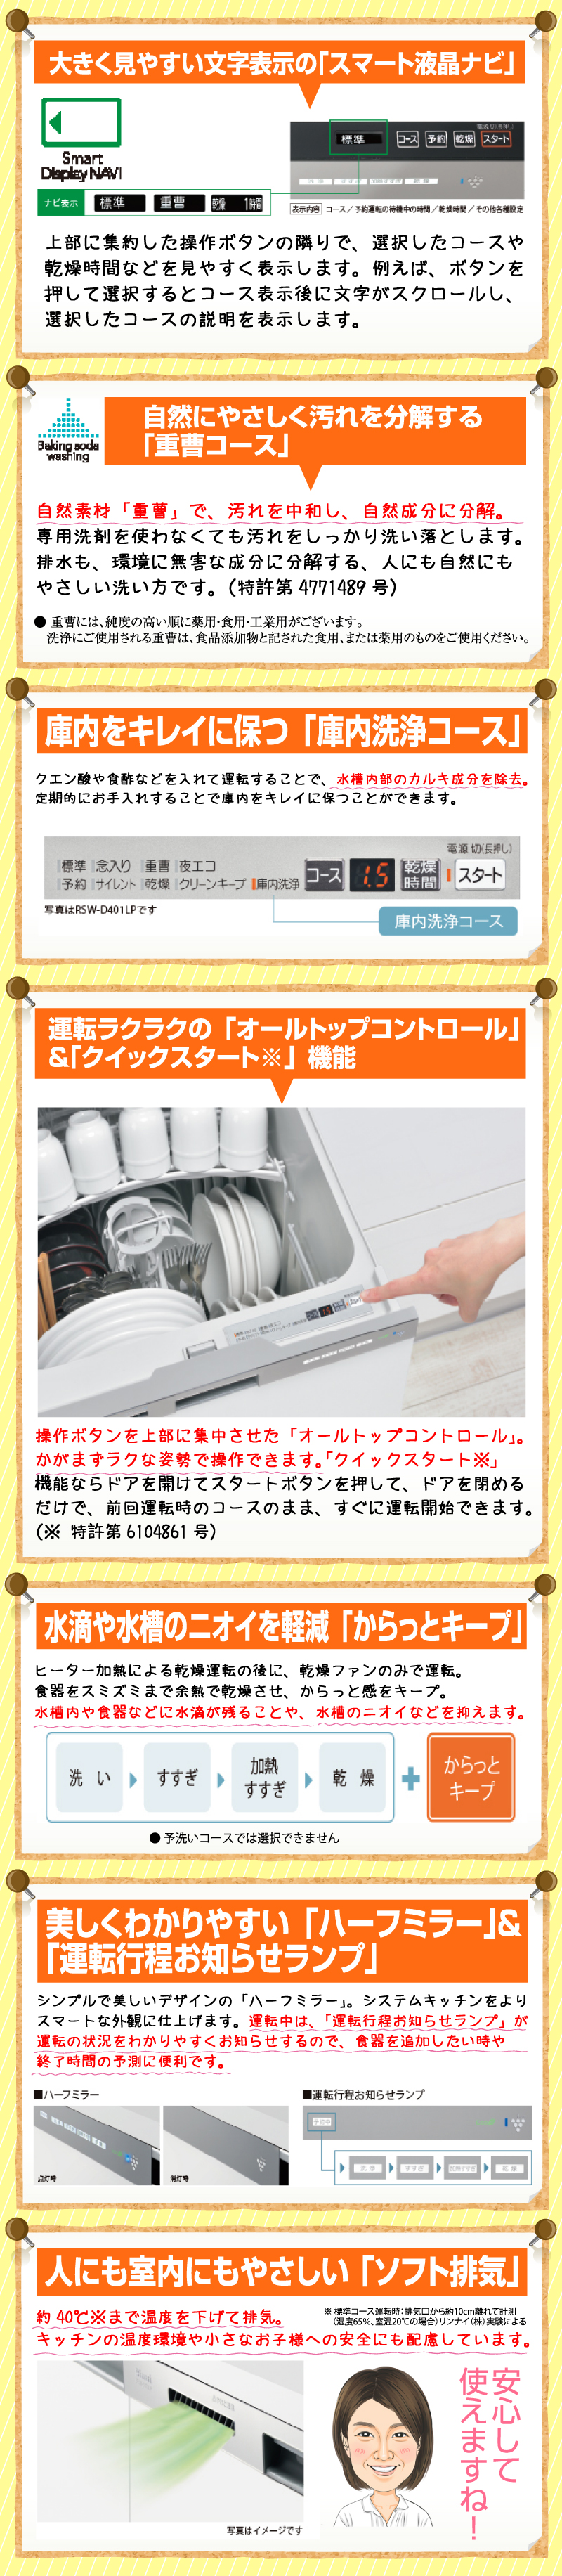 リンナイ食器洗い機 フロントオープンタイプRSW-F404LP